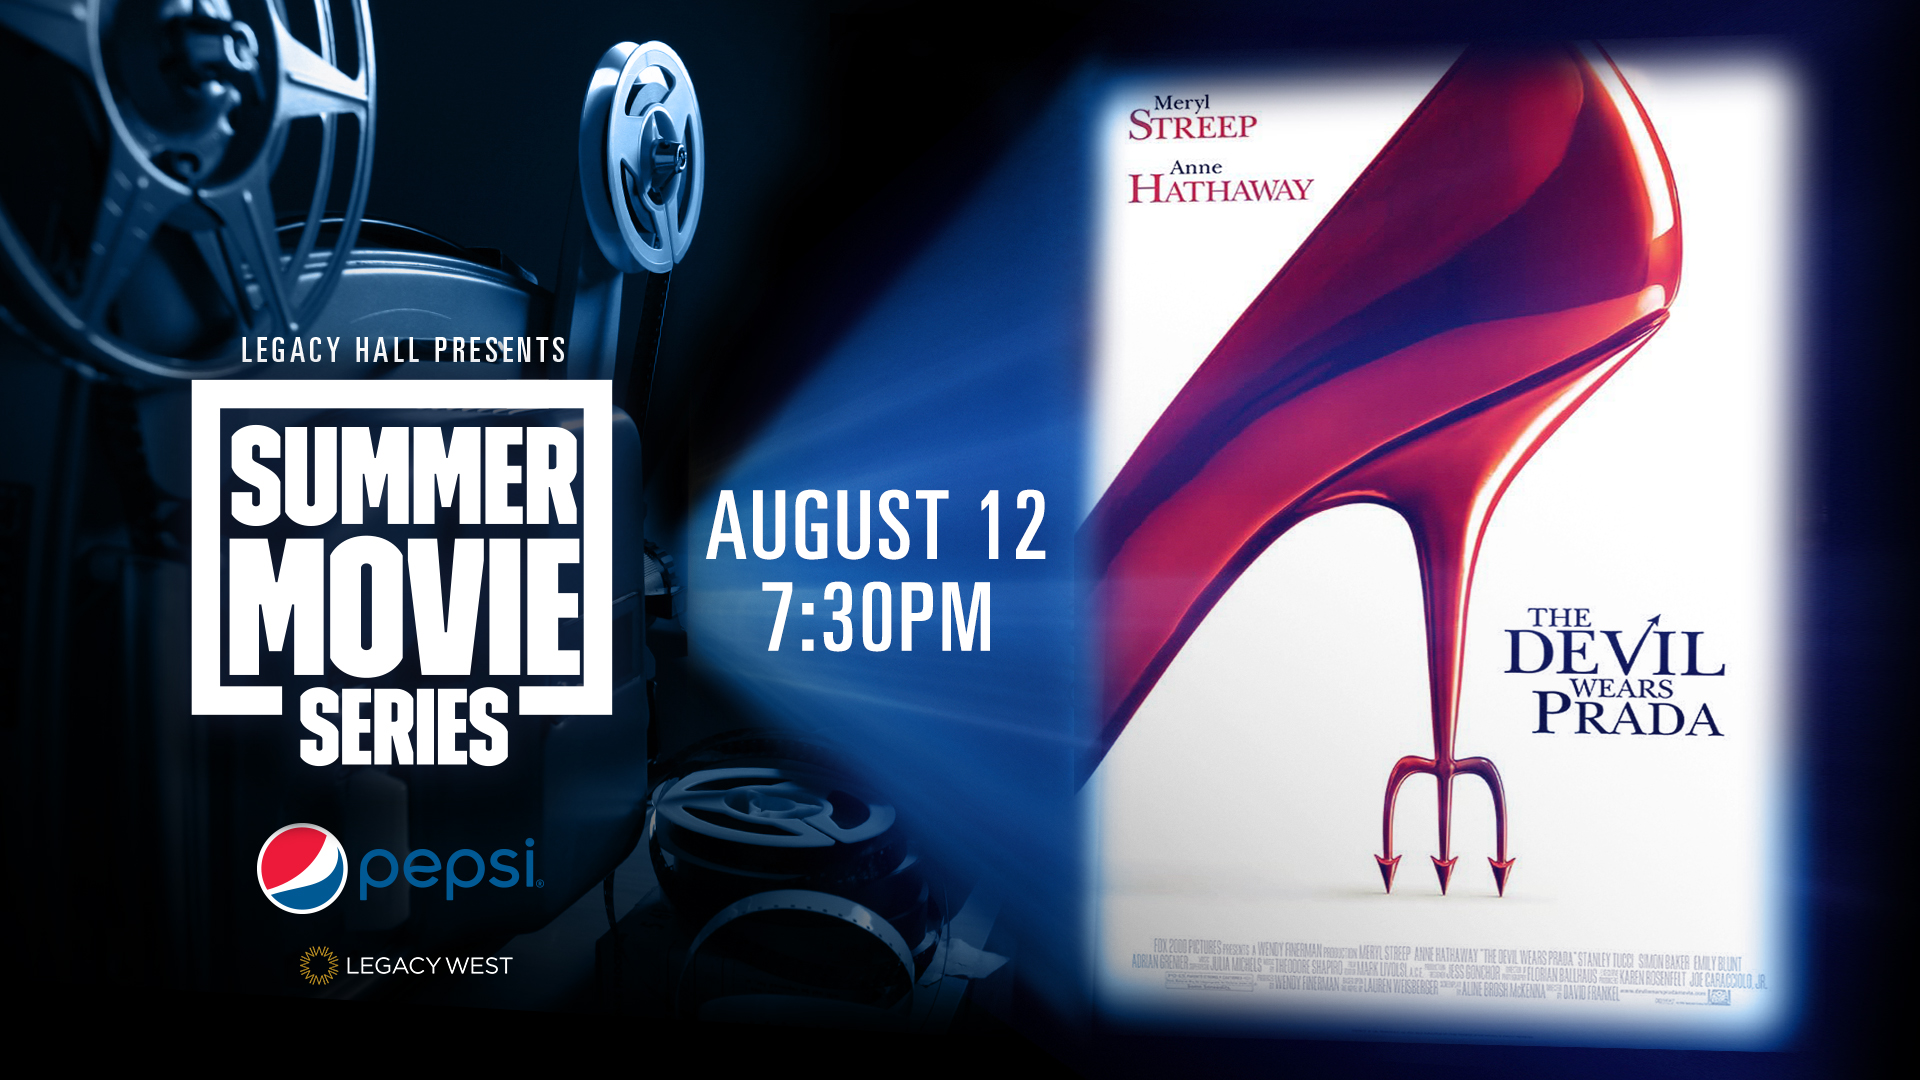 Pepsi Summer Movie Series: The Devil Wears Prada - hero